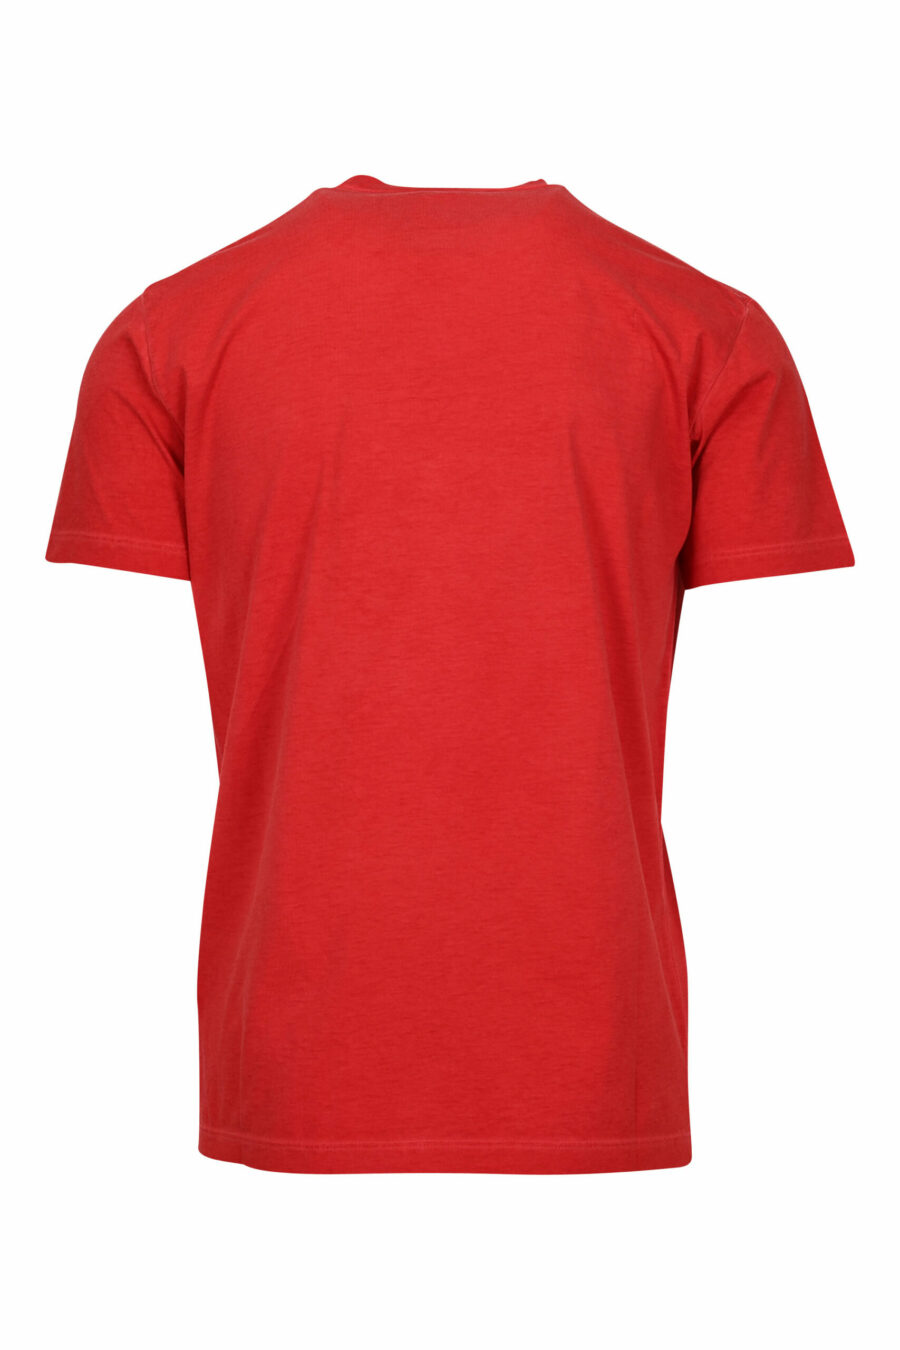 T-shirt rouge avec maxilogo "vip" - 8054148578923 1 scaled